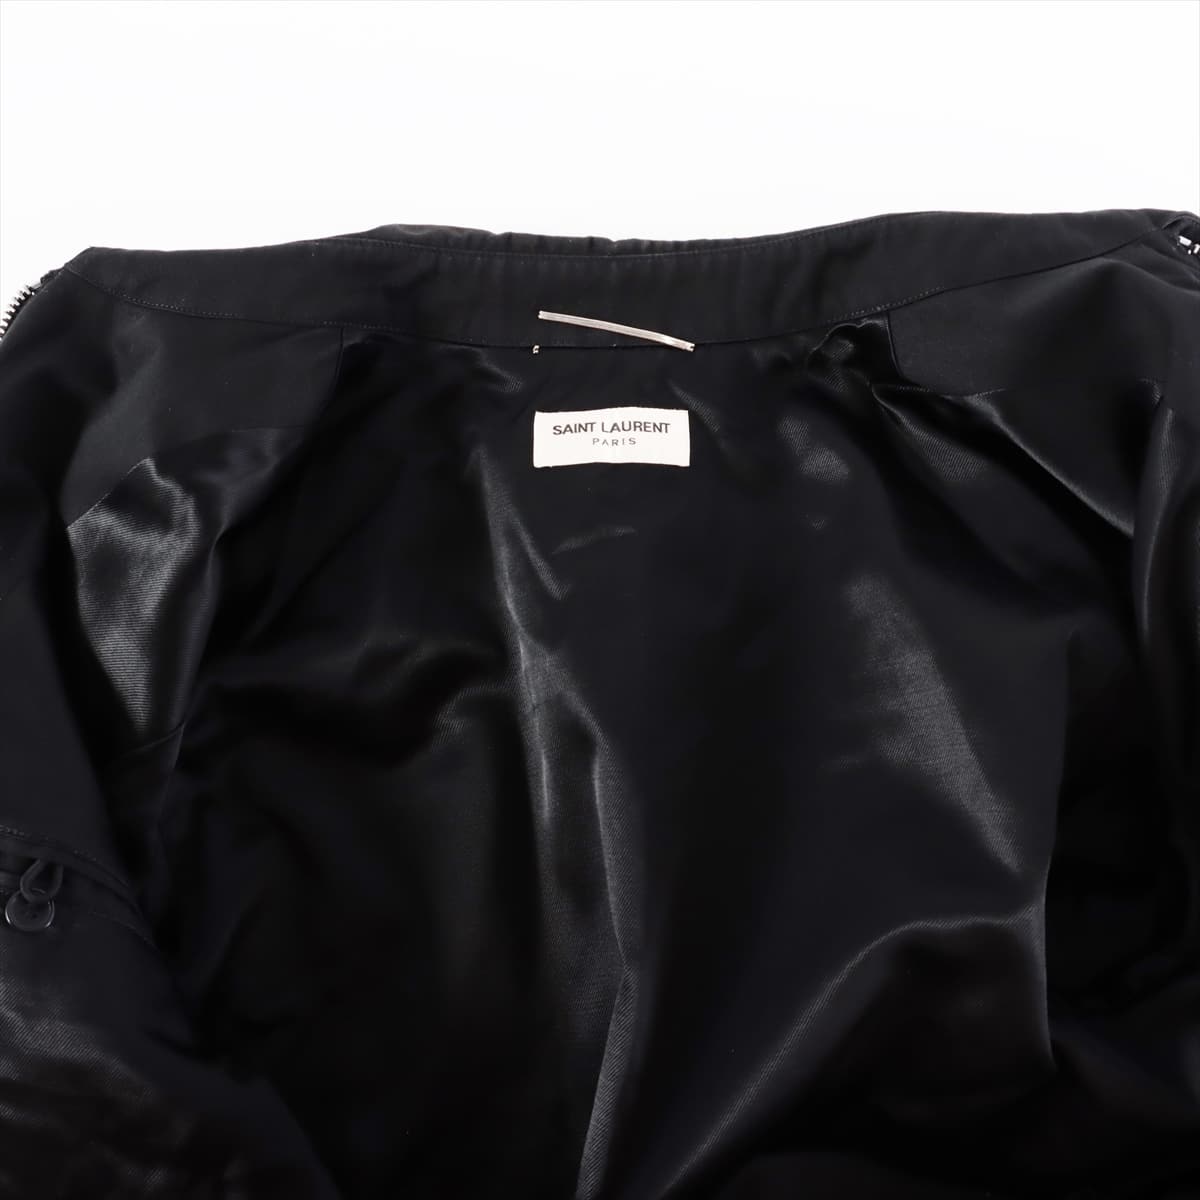 Saint Laurent Paris 12 years Cotton & polyester Jacket 46 Men's Black